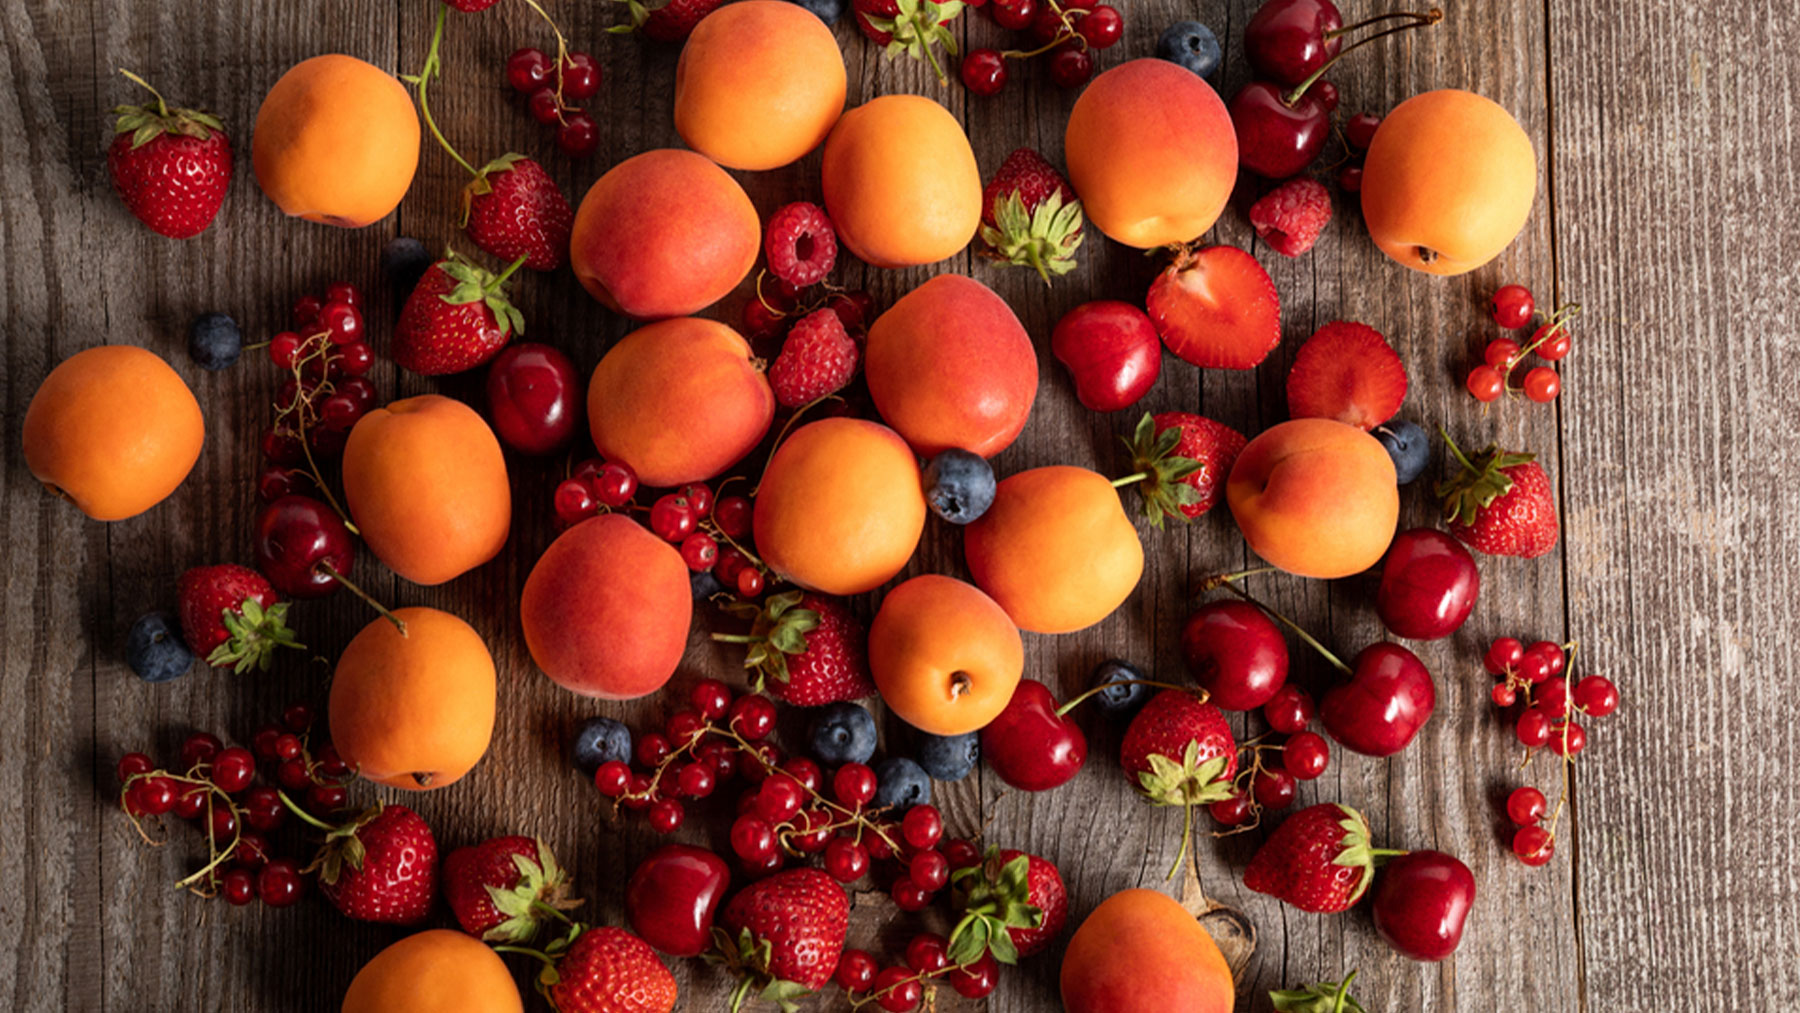 Albaricoques, fresas y cerezas se encuentra ahora en su mejor momento de consumo.